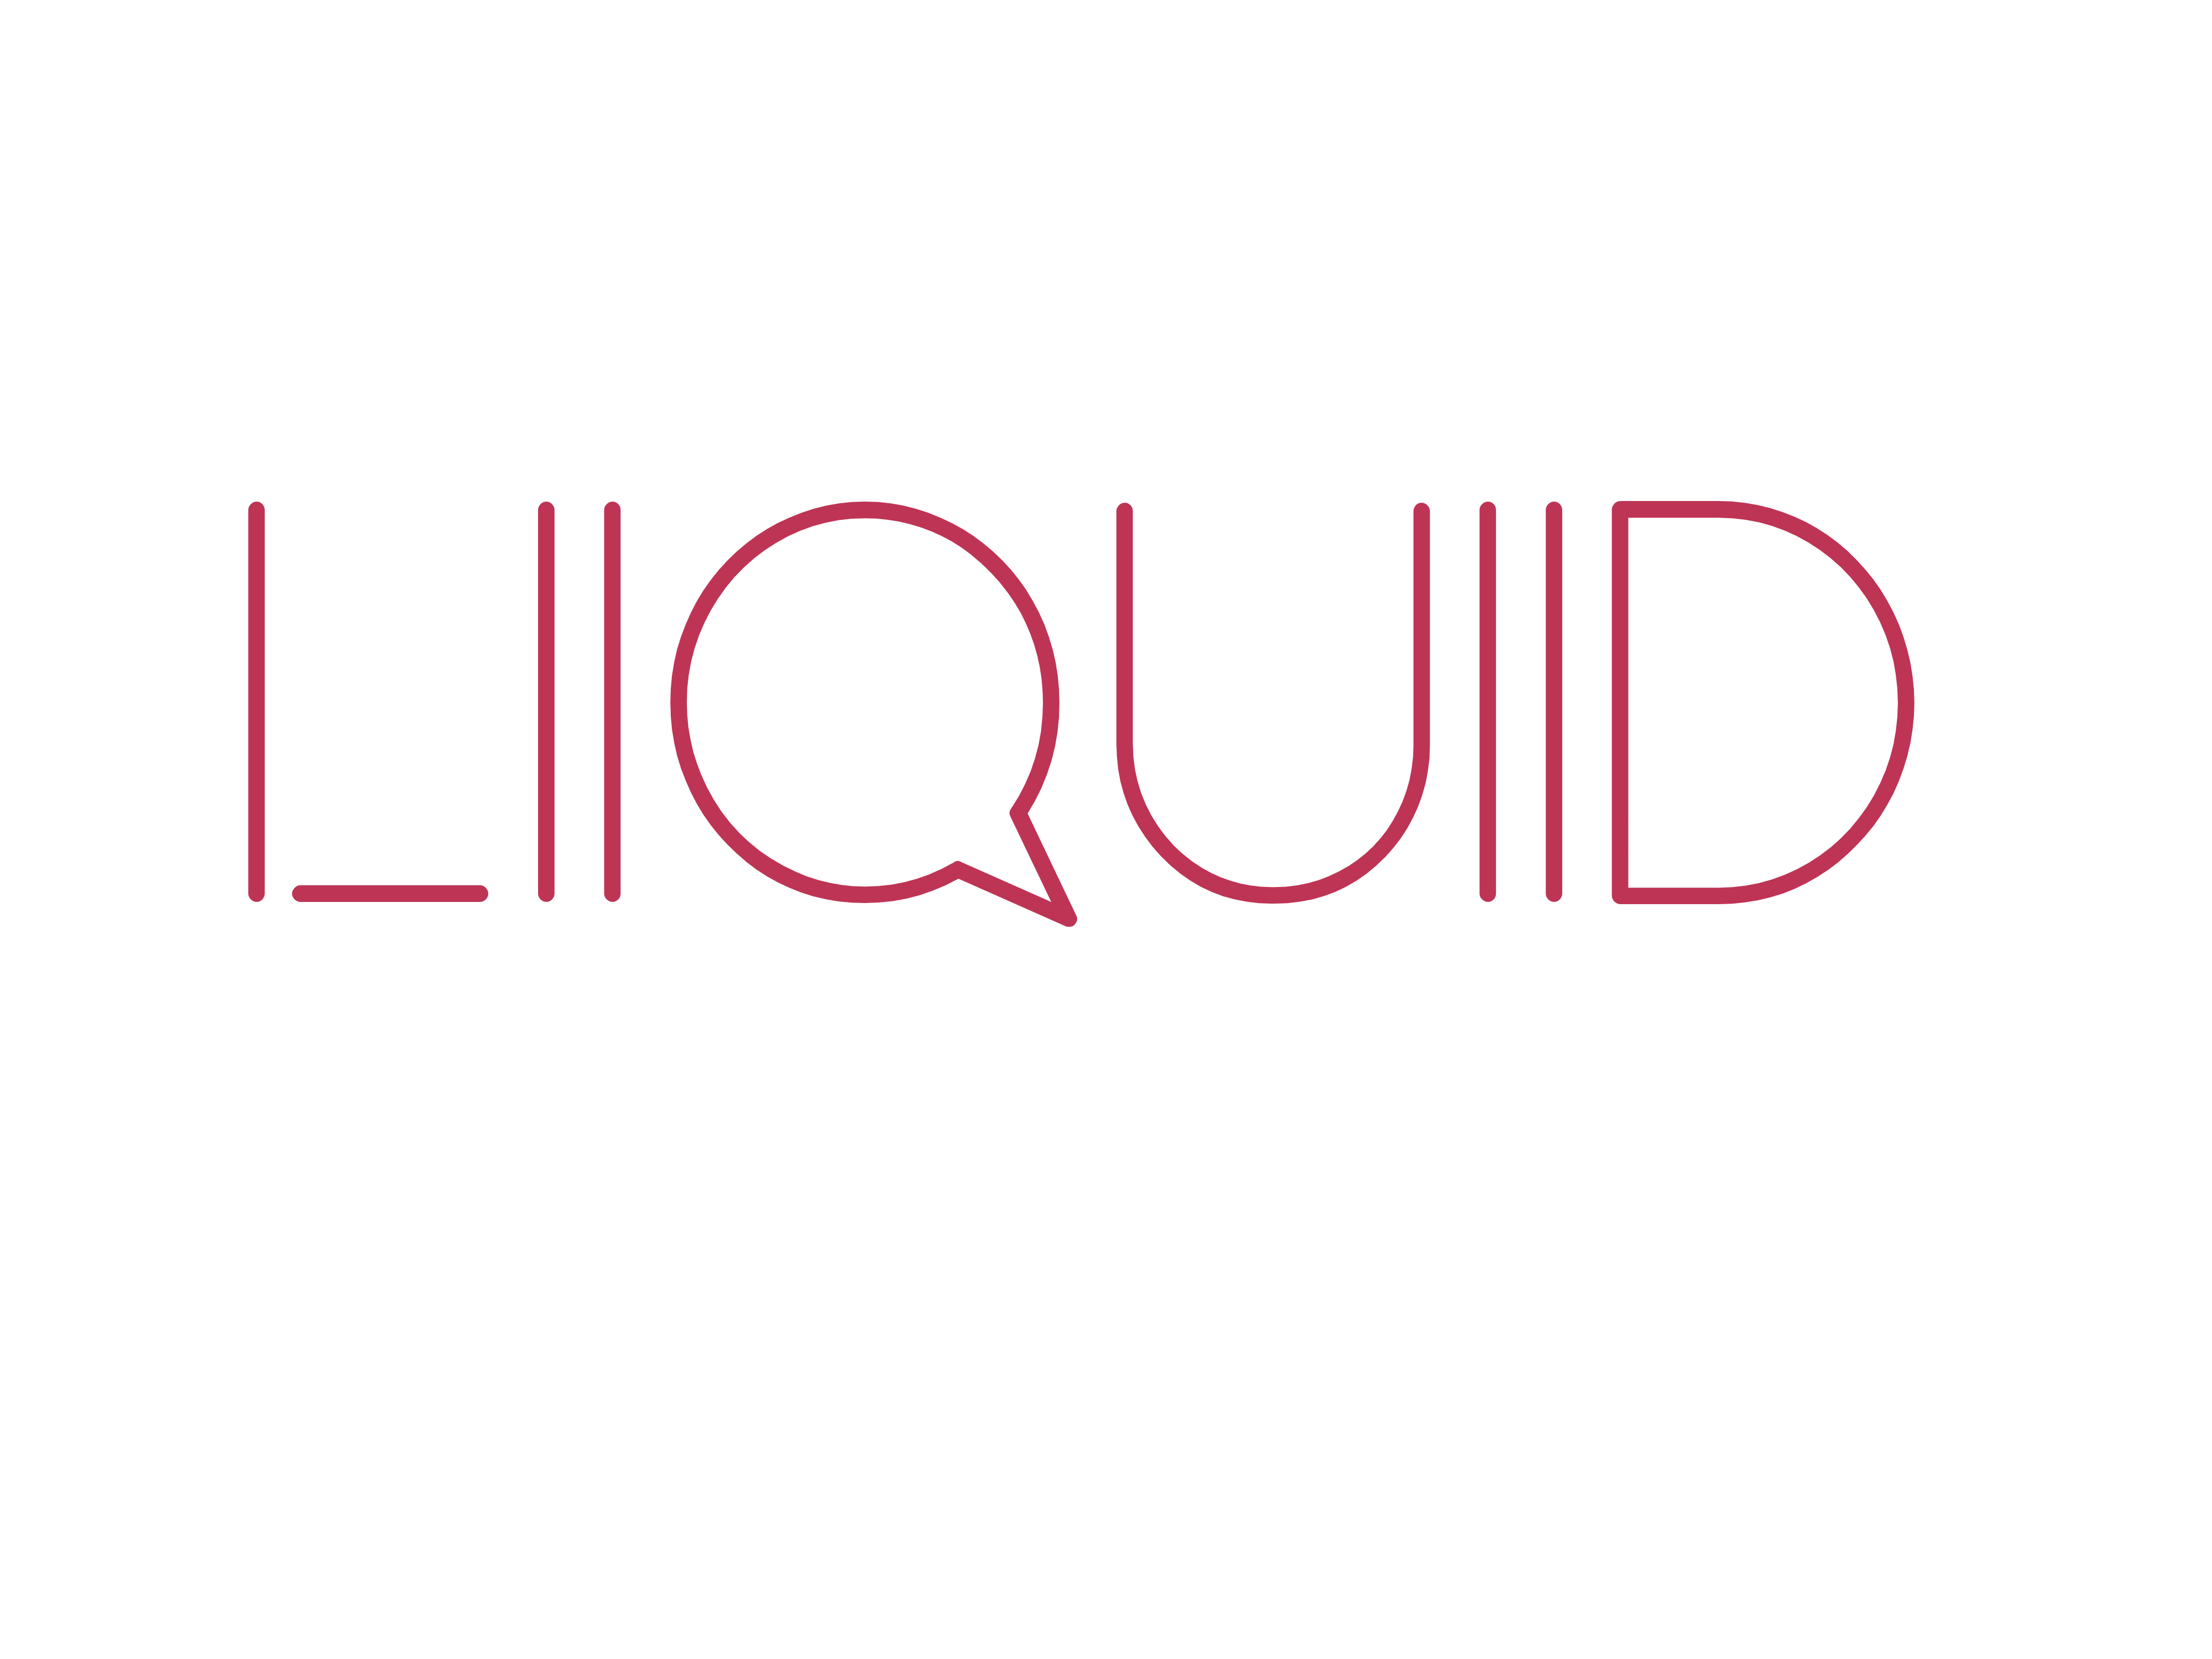 Liiquiid.com